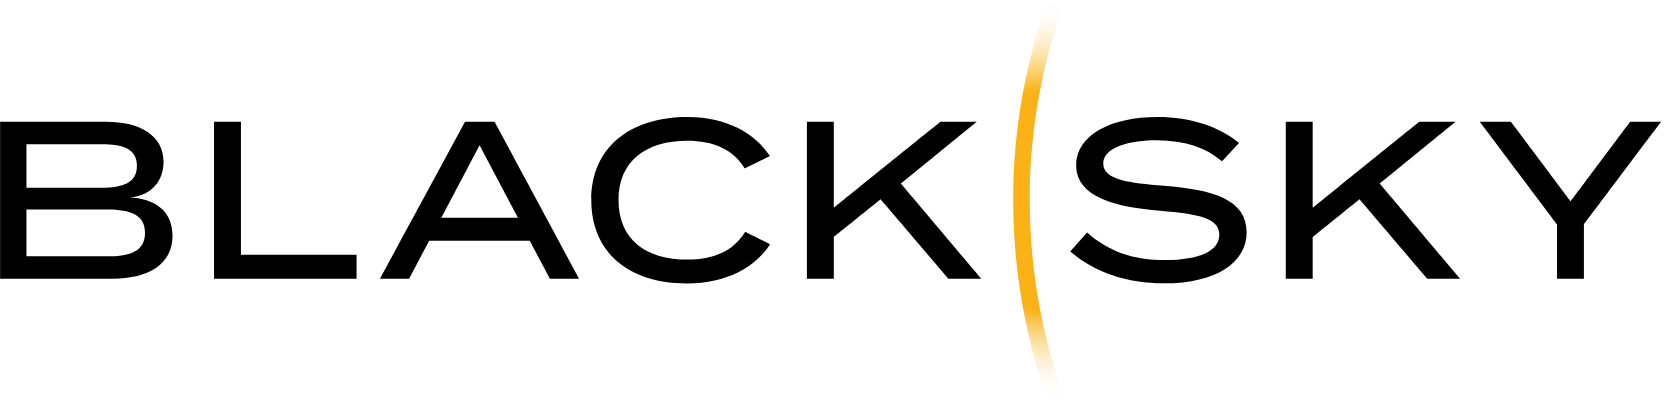 BlackSky Technology logo large (transparent PNG)